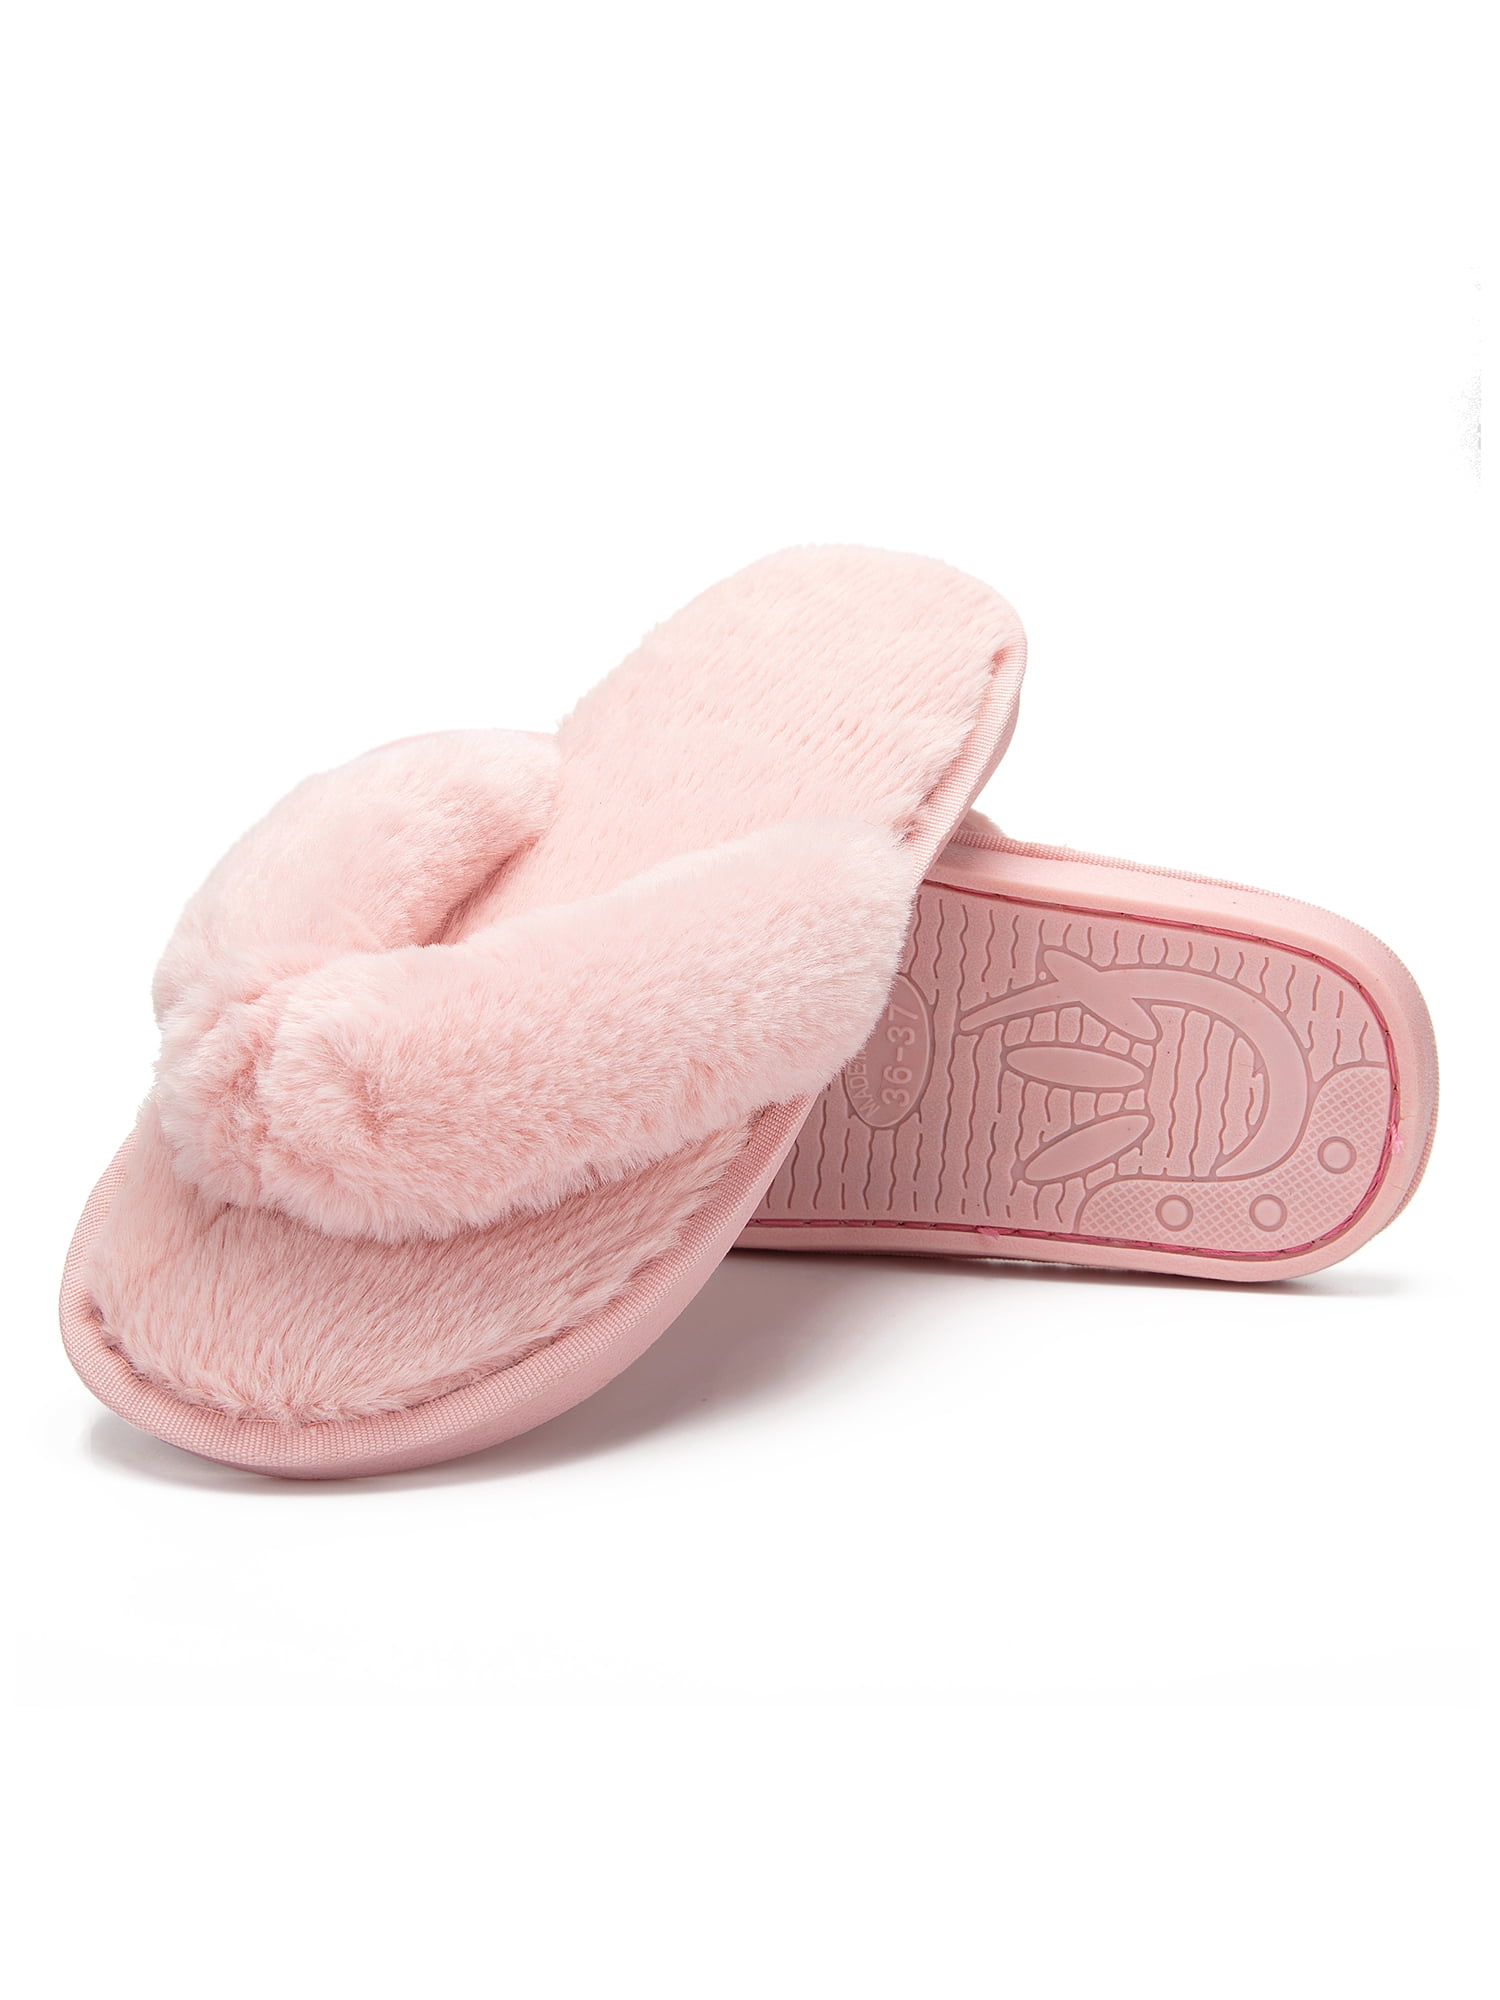 LELINTA Cozy House Slippers for Women Non Slip Indoor House Spa Thong  Slipper Memory Foam Slide Shoes Slipper, Black/Gray/Pink